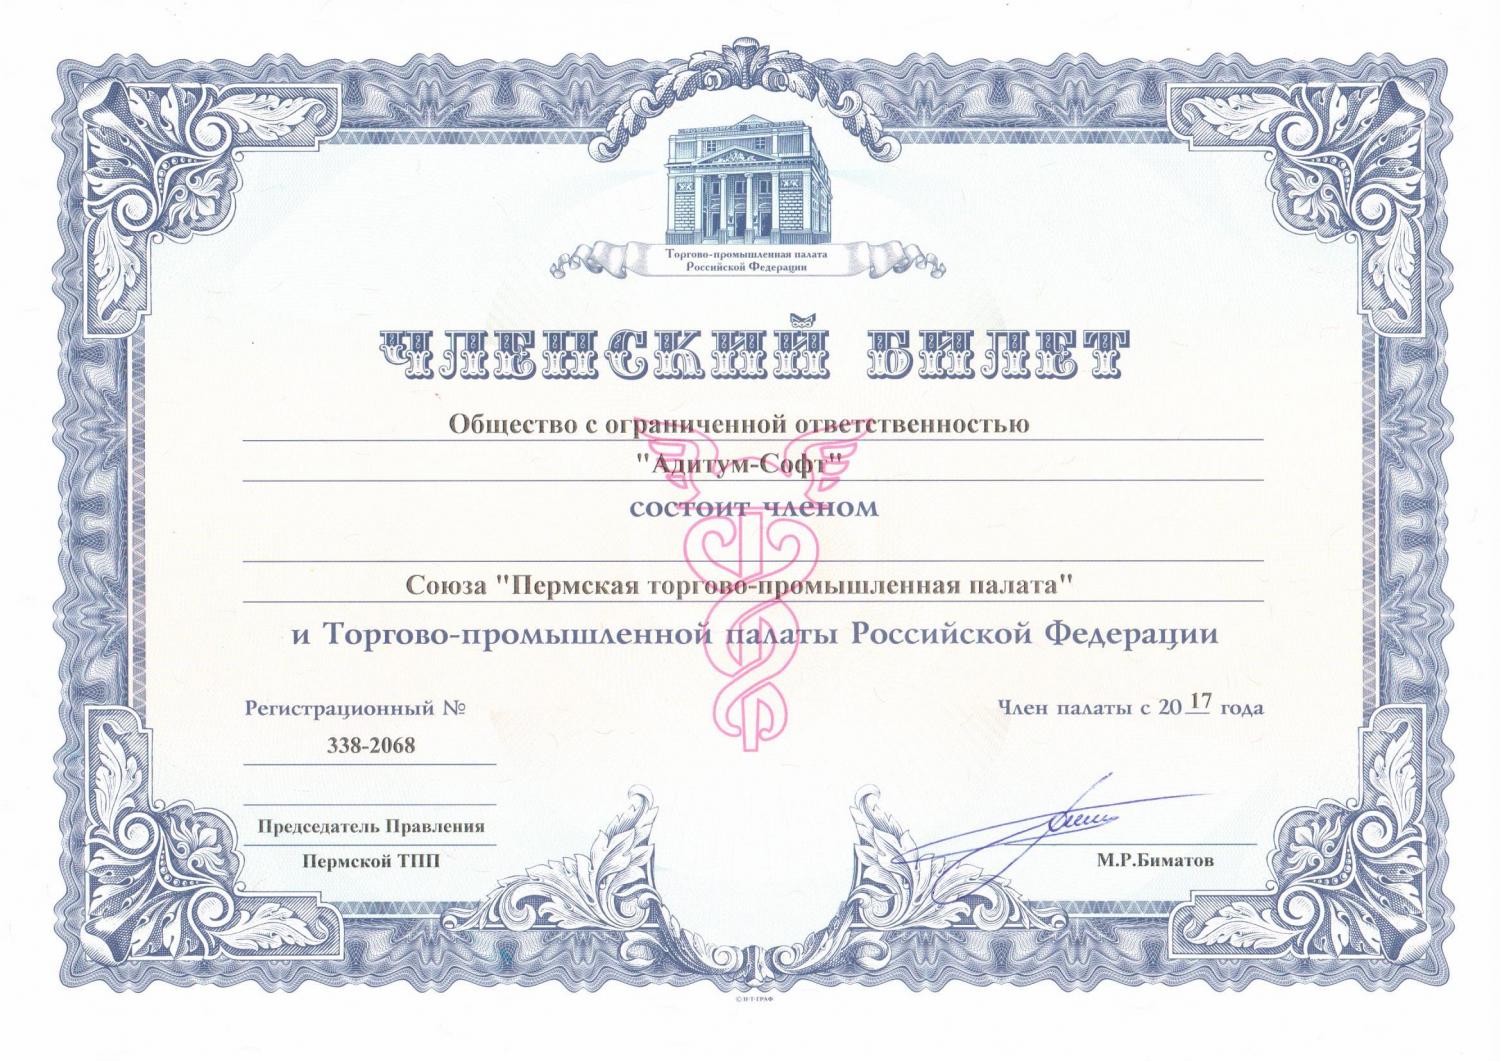 Членский билет Союза "Пермская торгово-промышленная палата"